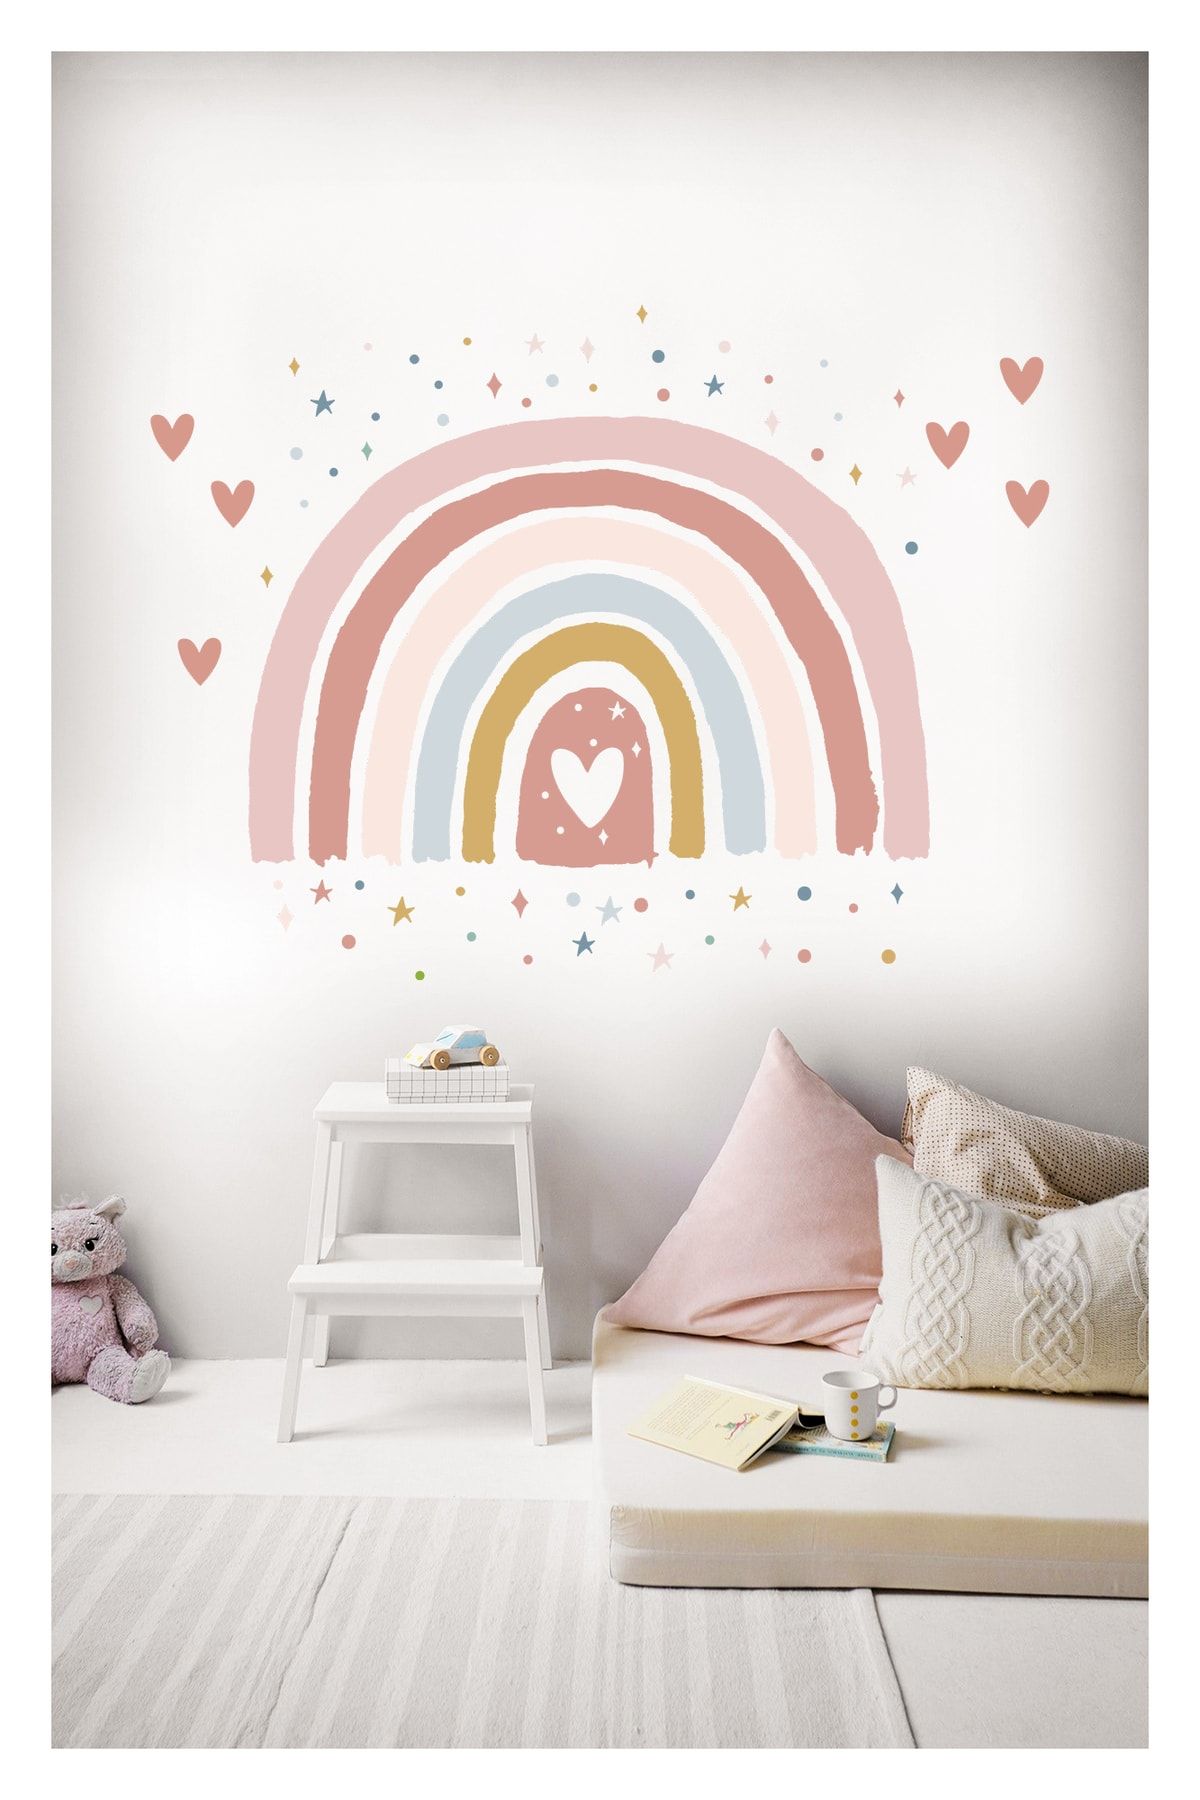 Sticker Sepetim Soft Renkli Puantiye Yıldız Kalpler Ve Gökkuşağı Dekoratif Çocuk Odası Duvar Süsü Duvar Sticker